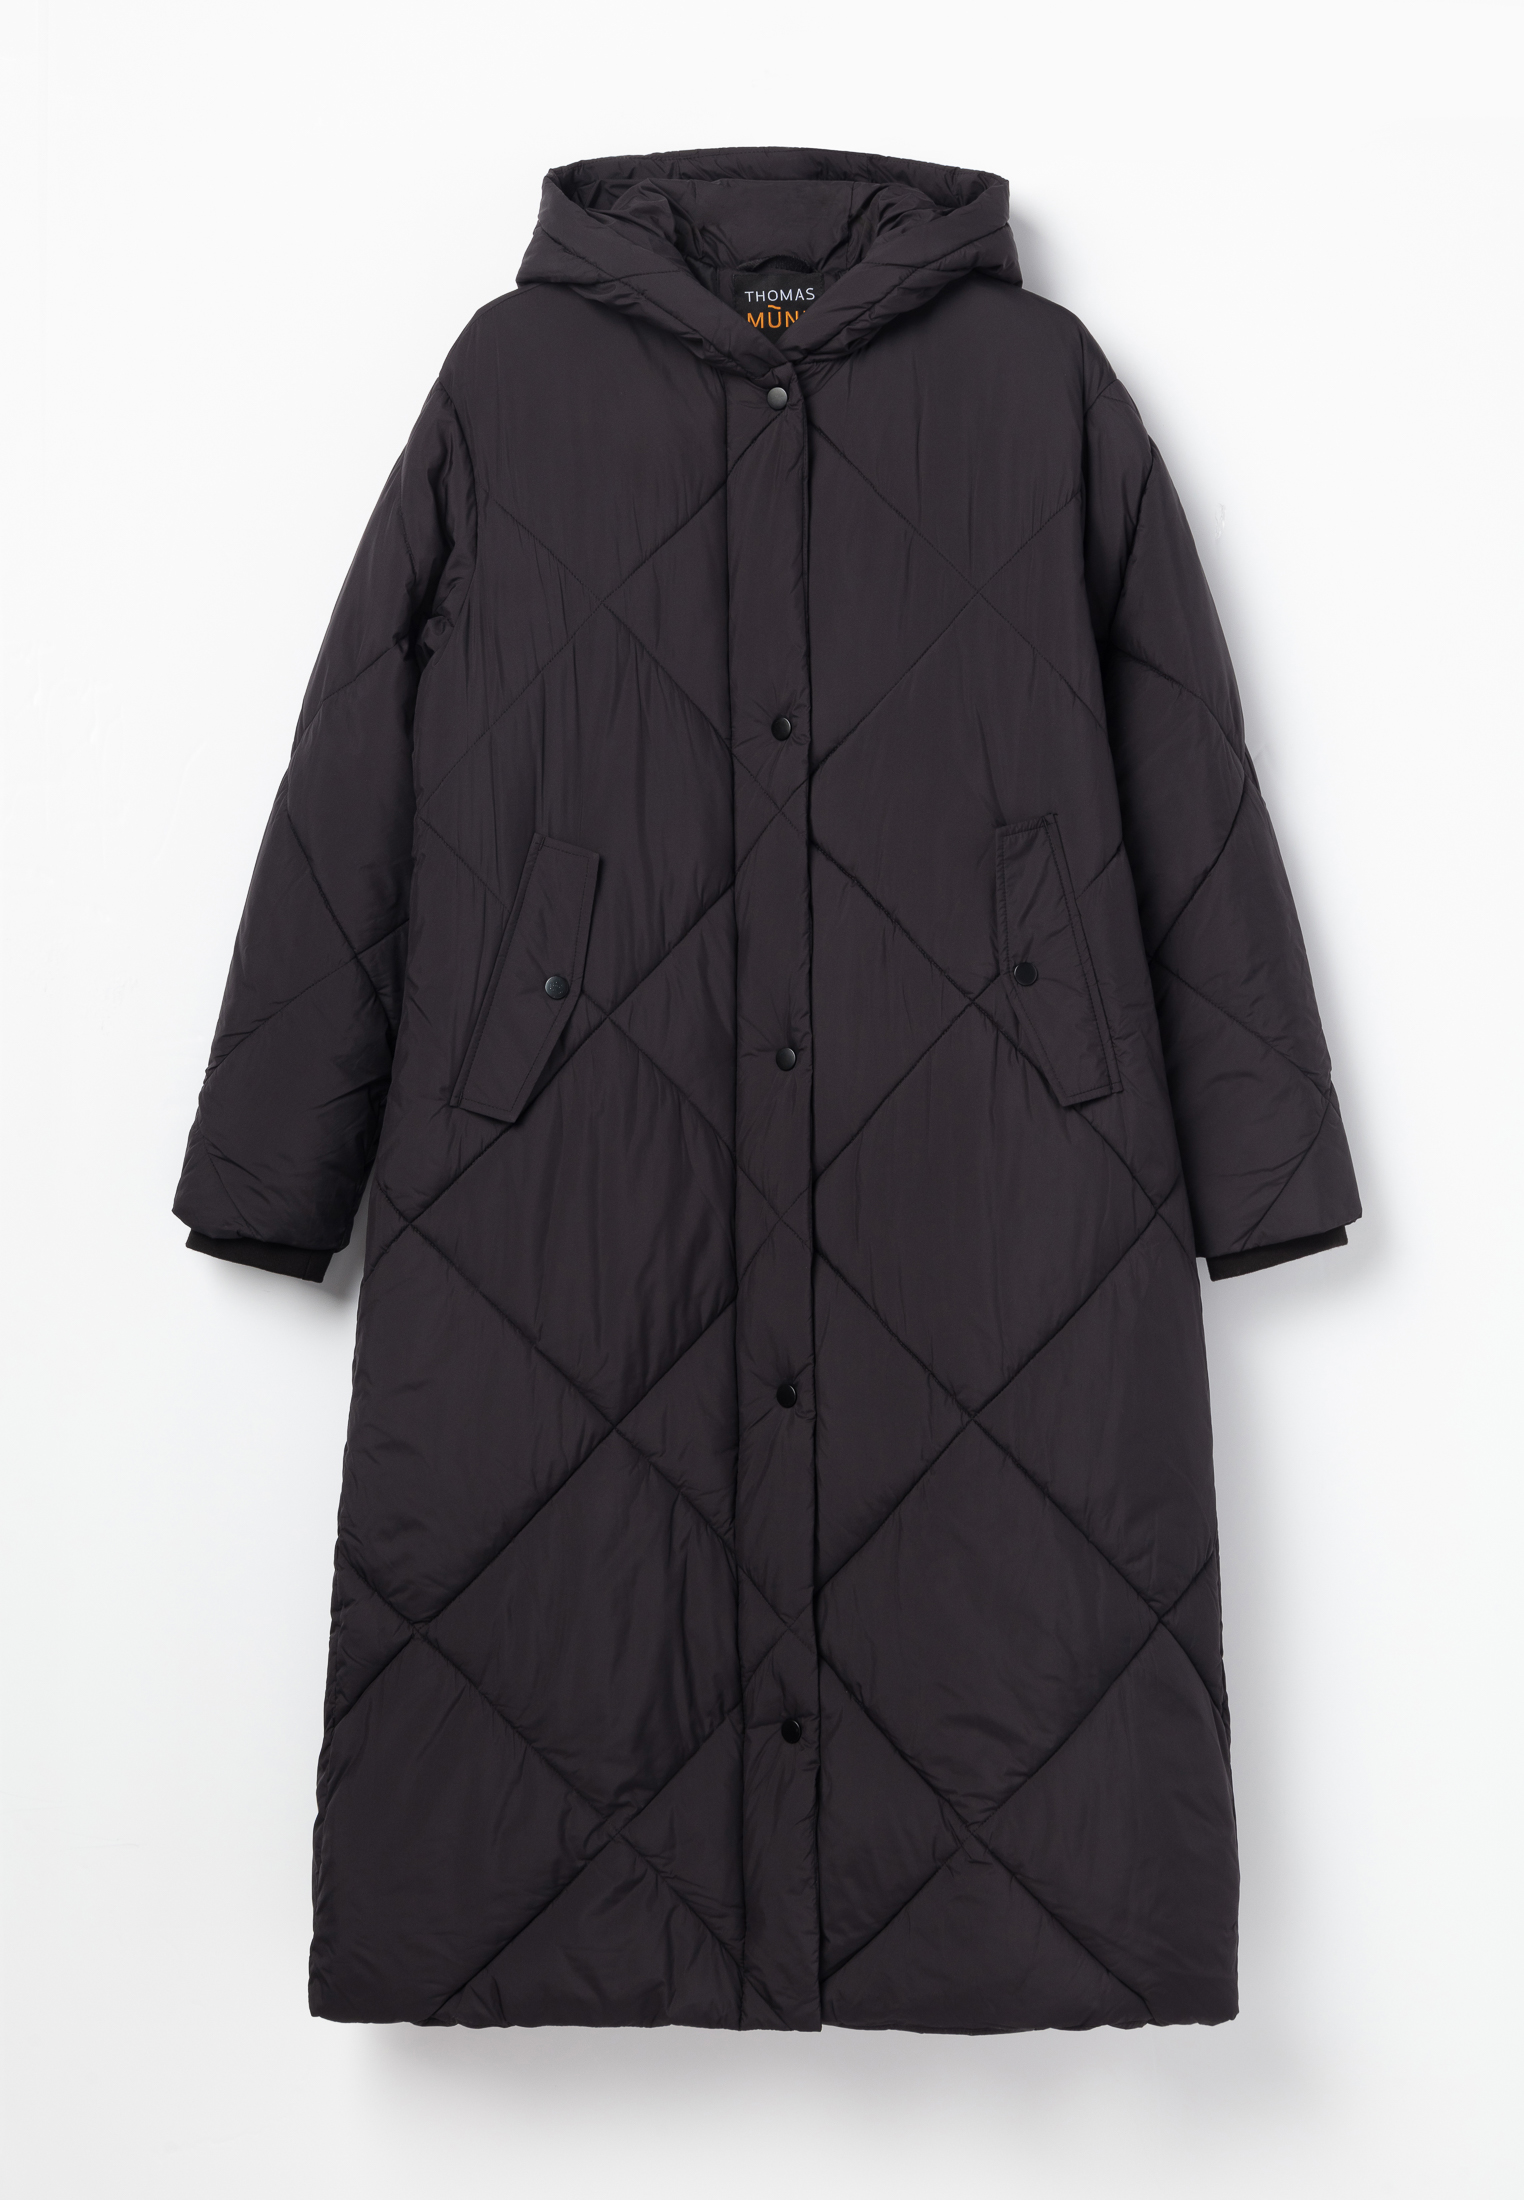 Пальто Thomas Munz 859-32N-0802, цвет черный, размер 48-170